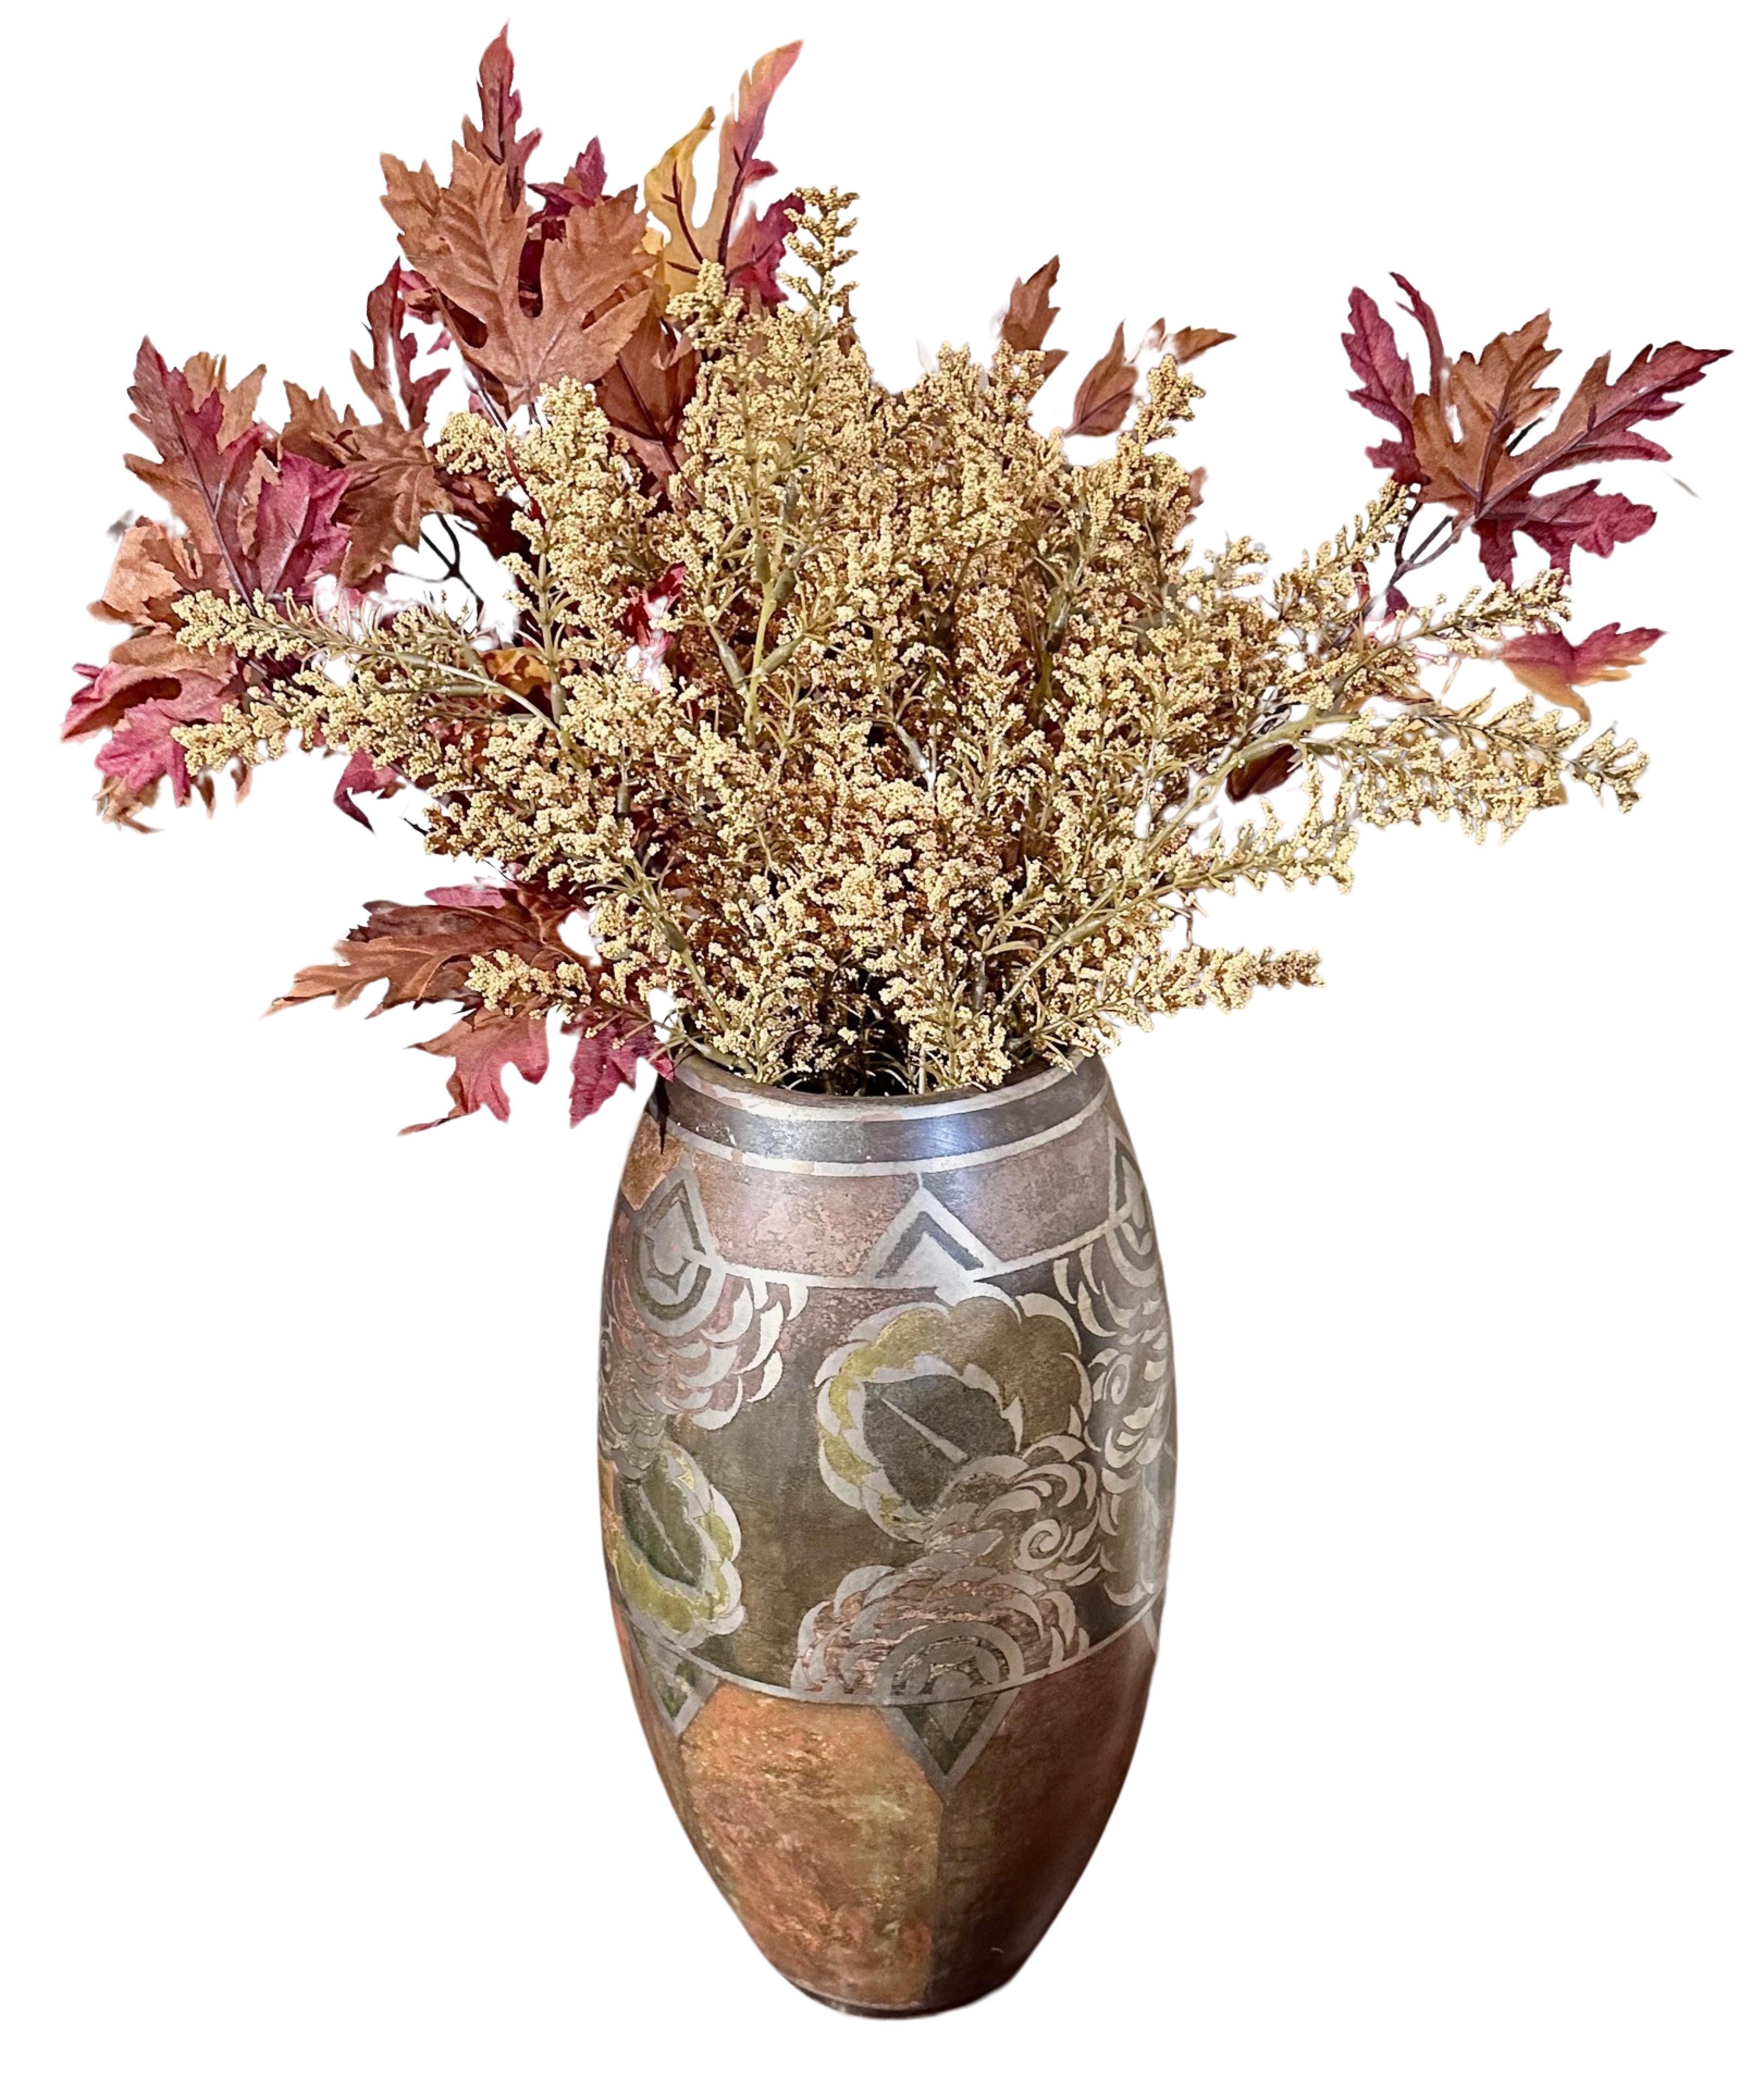 Vase Dinanderie de l'artiste français Jean Dunand. Ce vase rare et inhabituel présente une combinaison d'images florales et géométriques abstraites. La patine multicouche confère à ce vase un style unique.   Les textures sont variées, avec des tons